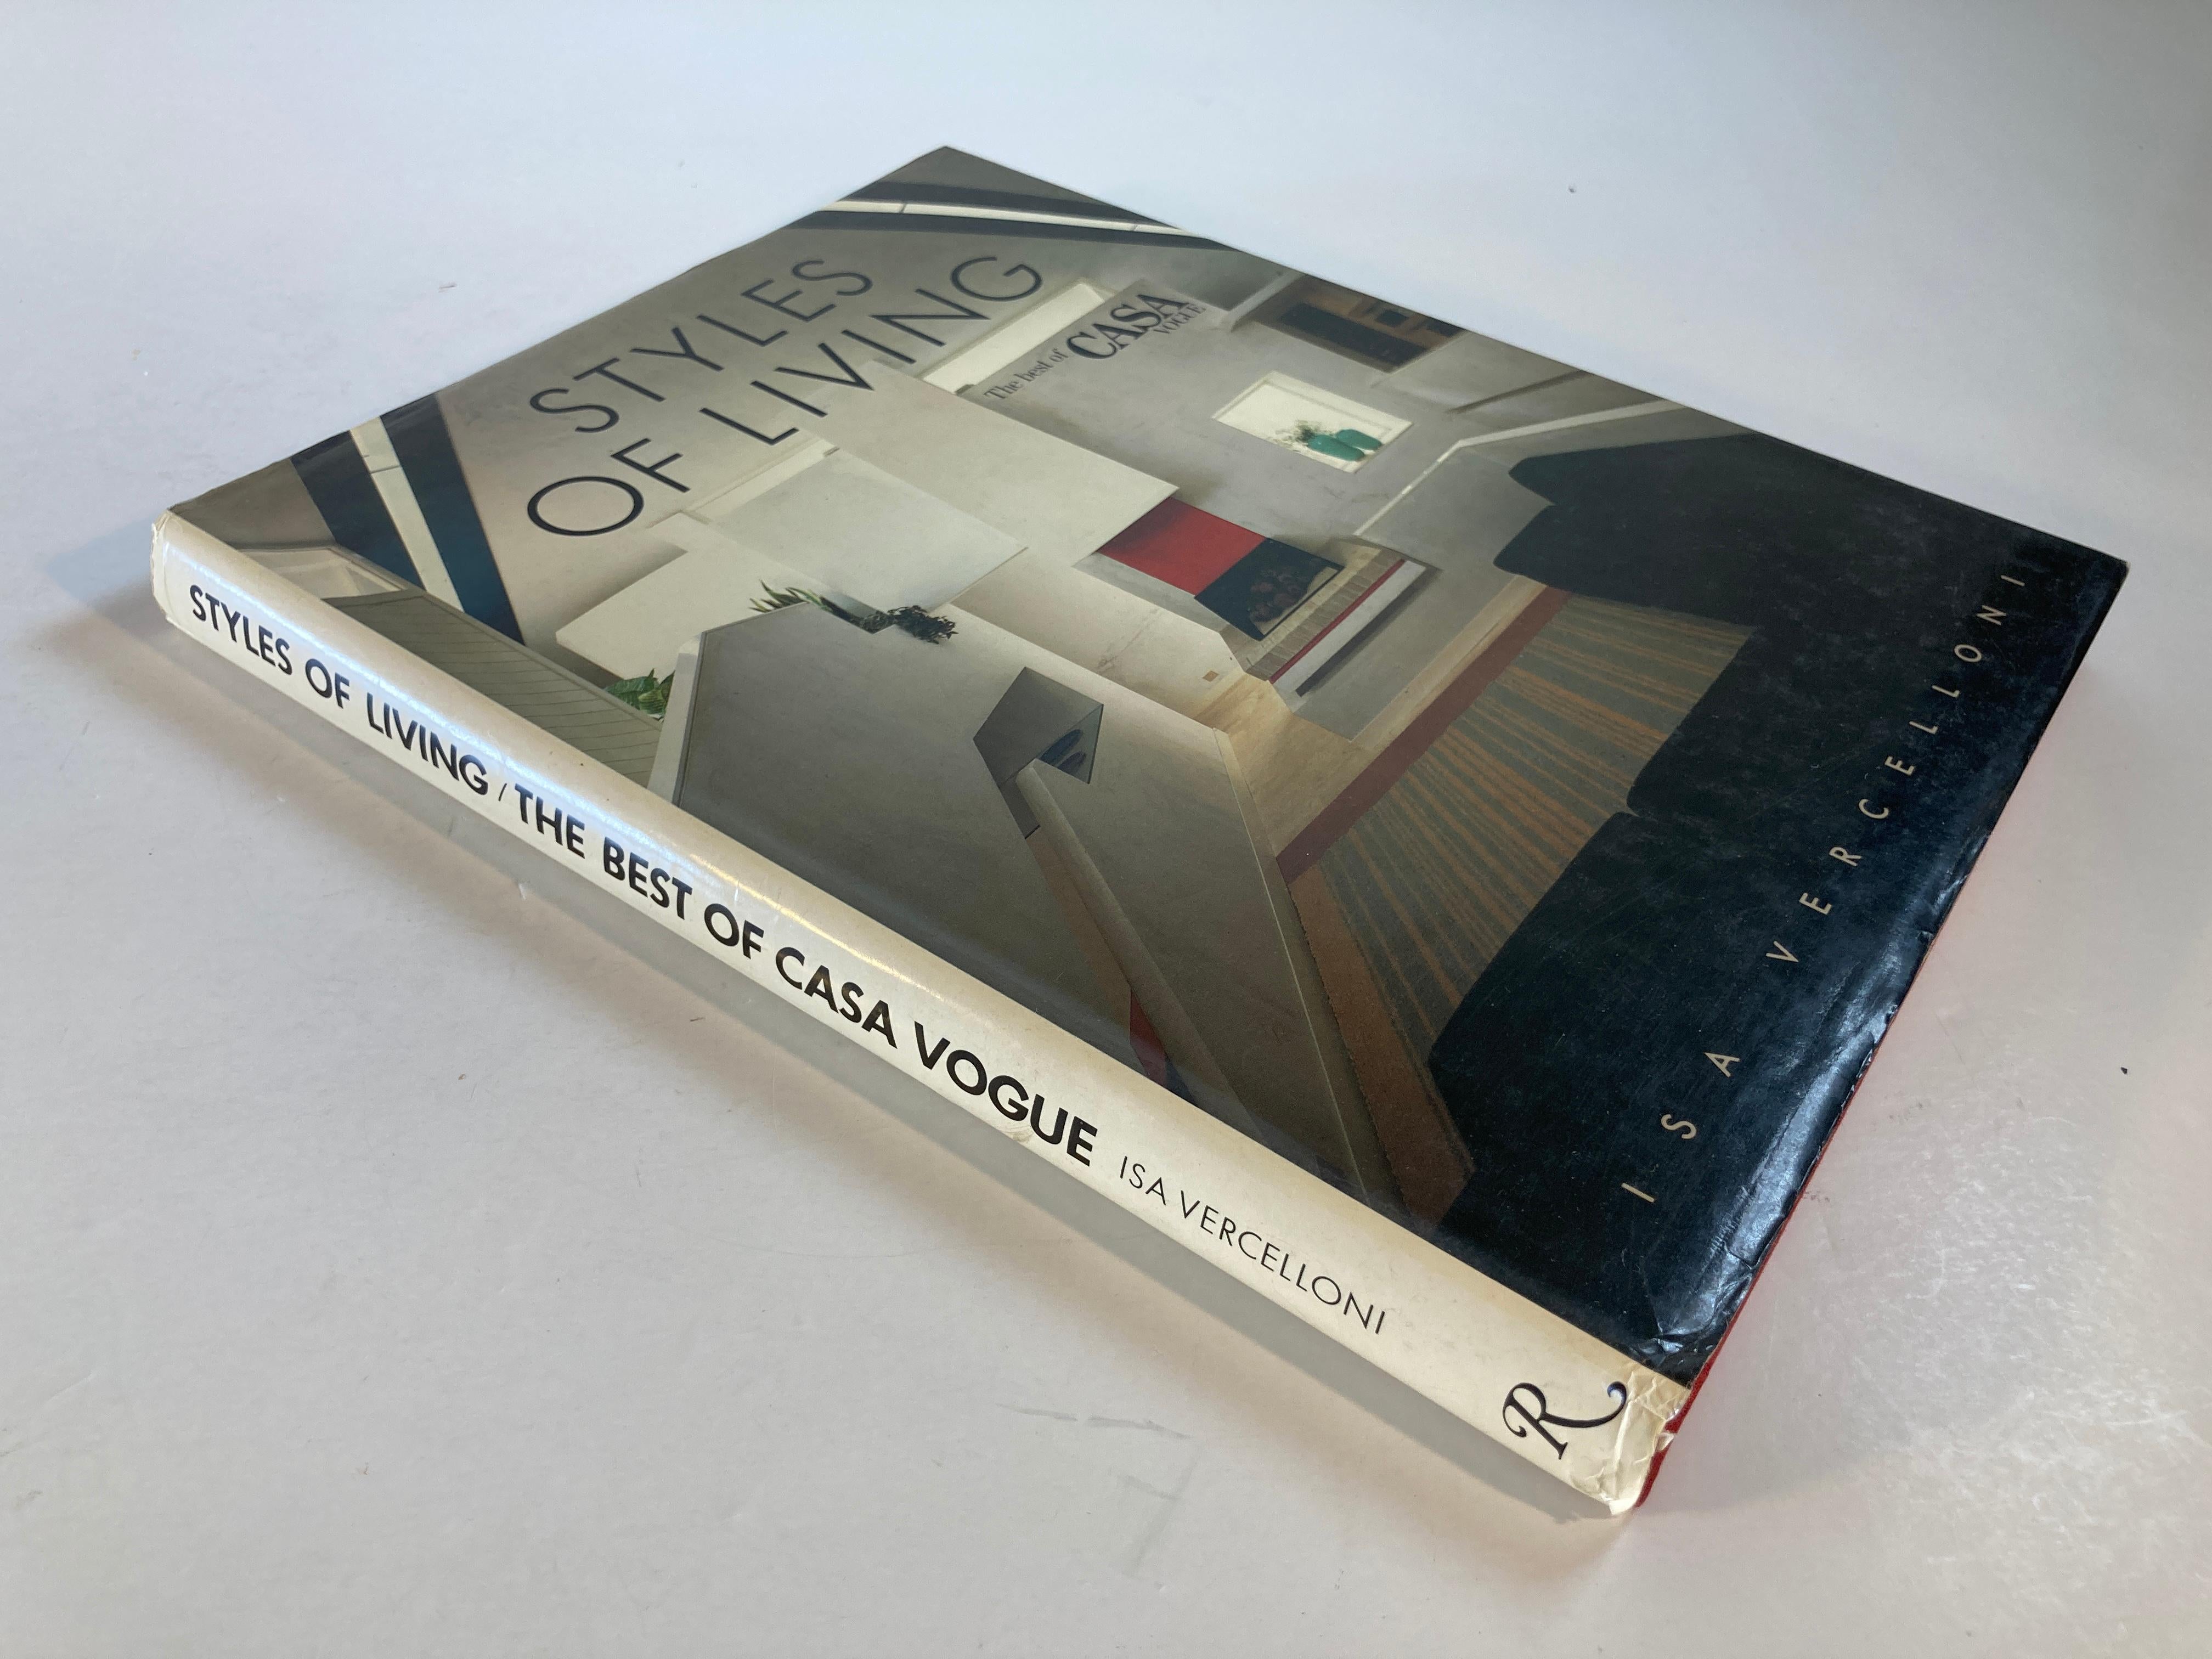 Styles of Living : The Best of Casa Vogue, livre relié de table à café.
par Isa Vercelloni
New York : Rizzoli, 1985.
Il s'agit d'un recueil de maisons fabuleuses, présentant sans honte le style de vie des personnes très riches et très